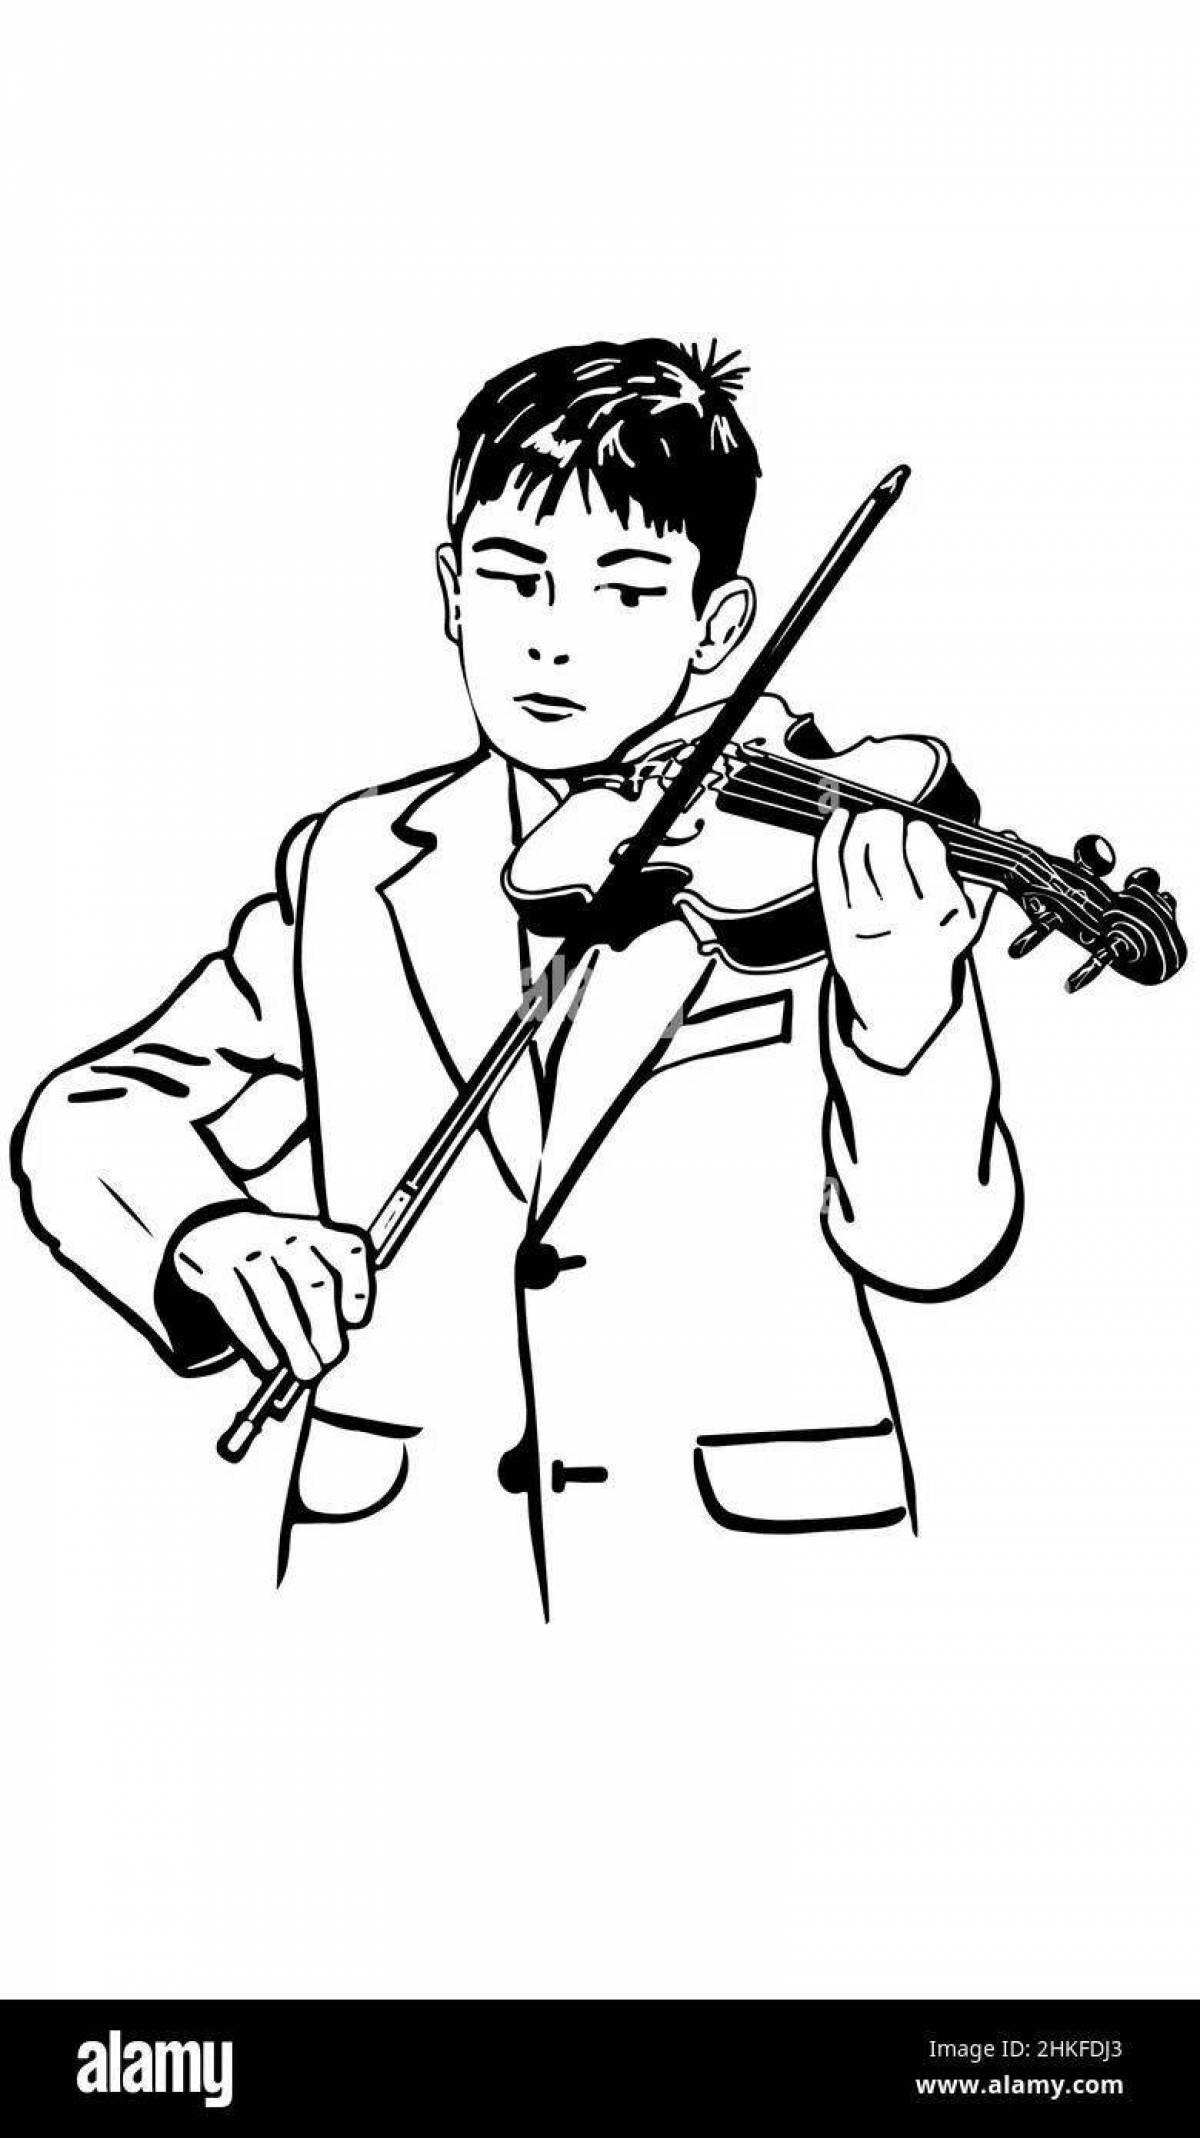 Мальчик скрипач